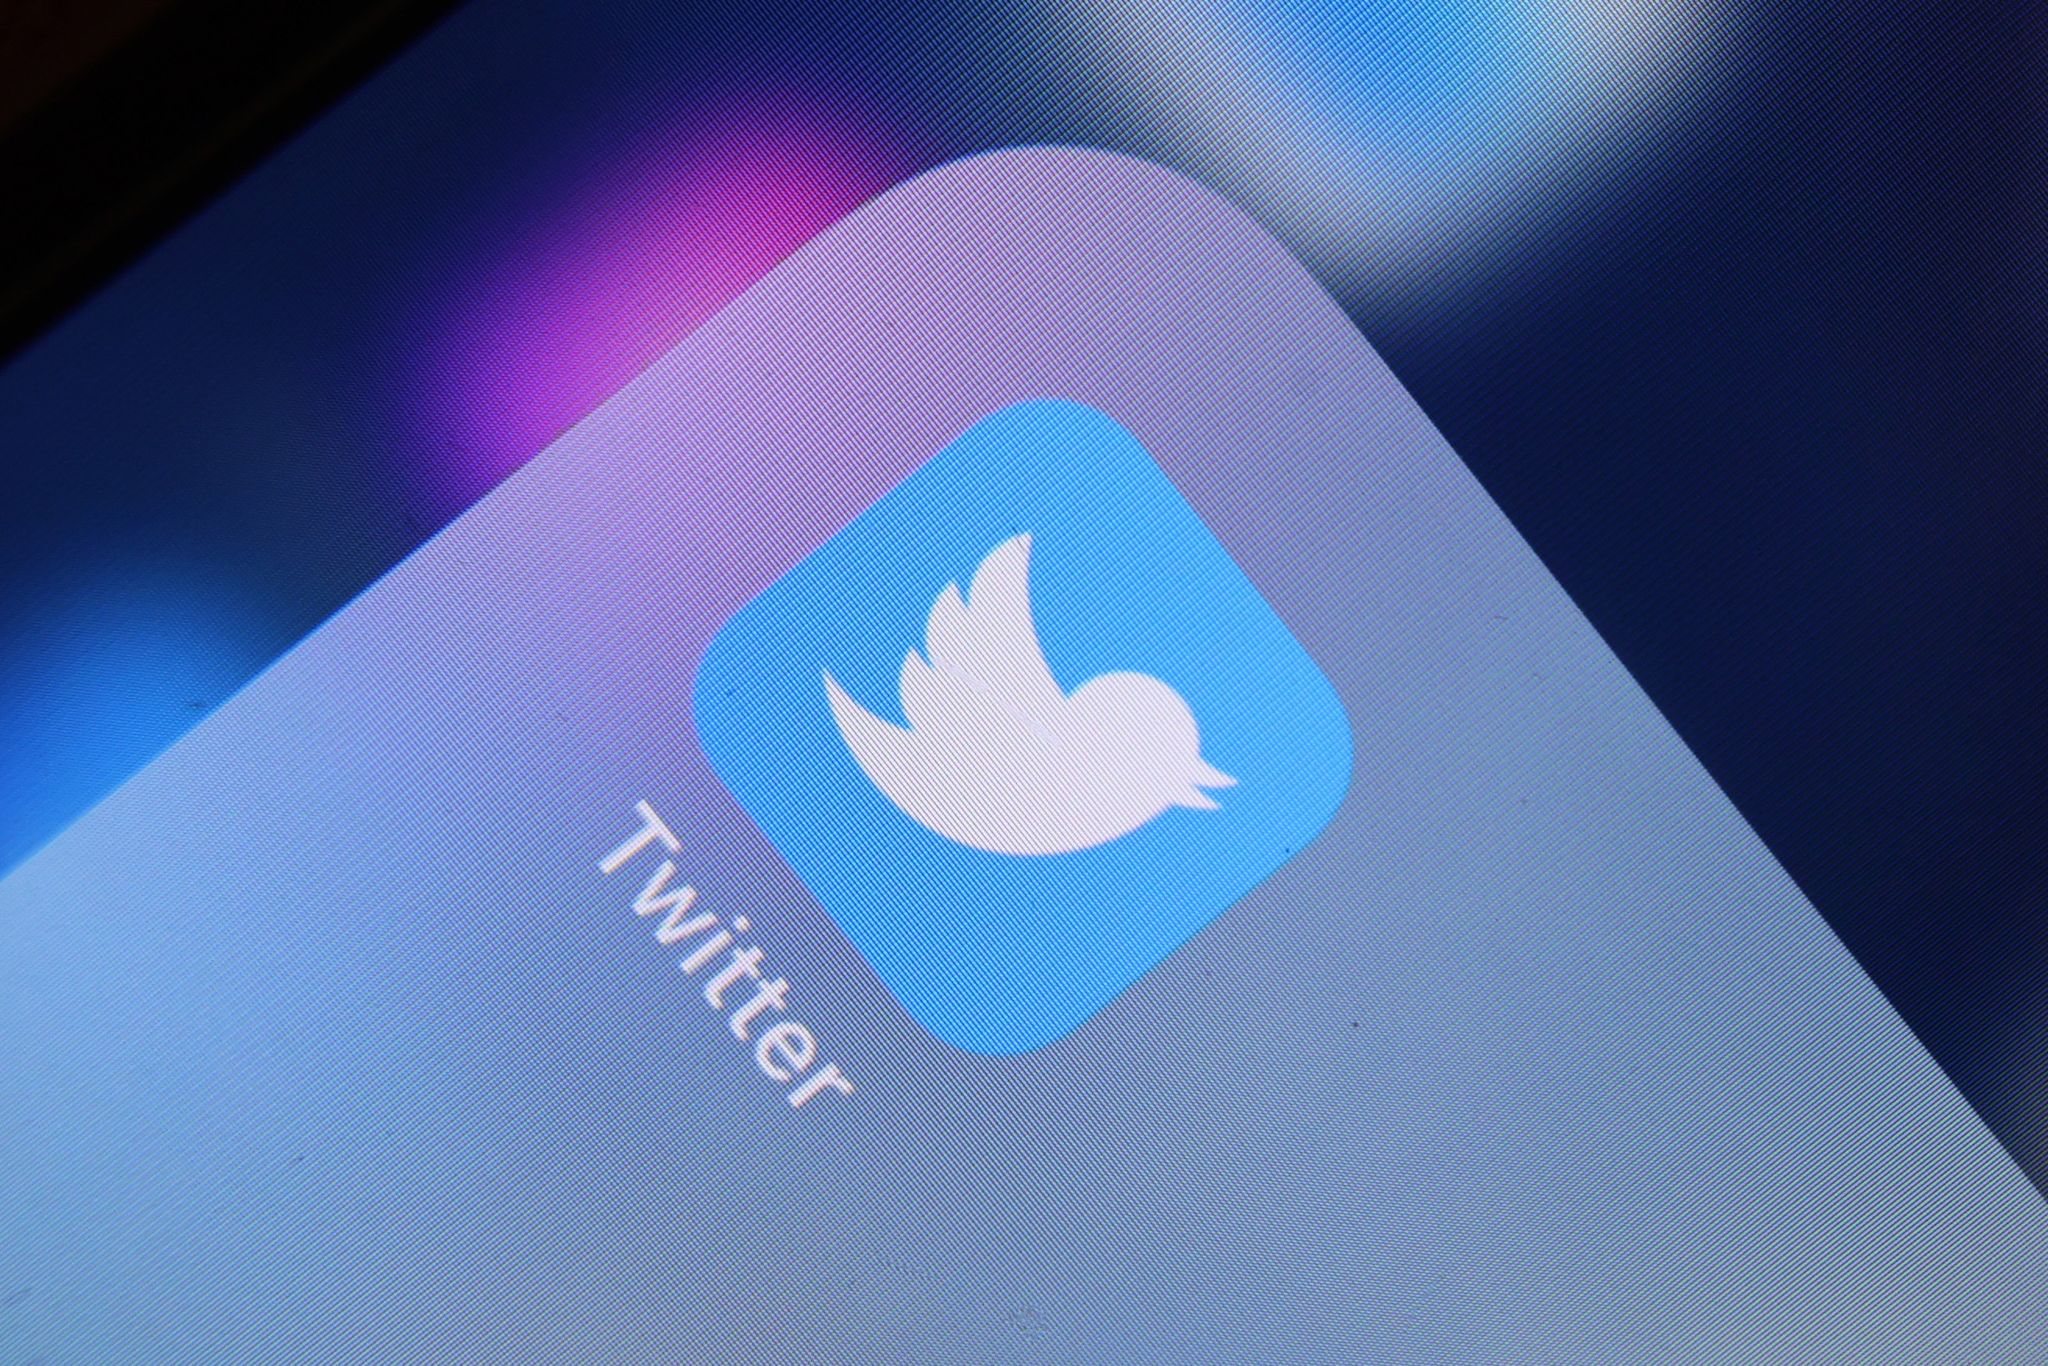 Hund wieder weg – Twitter kehrt zu Vogel-Logo zurück